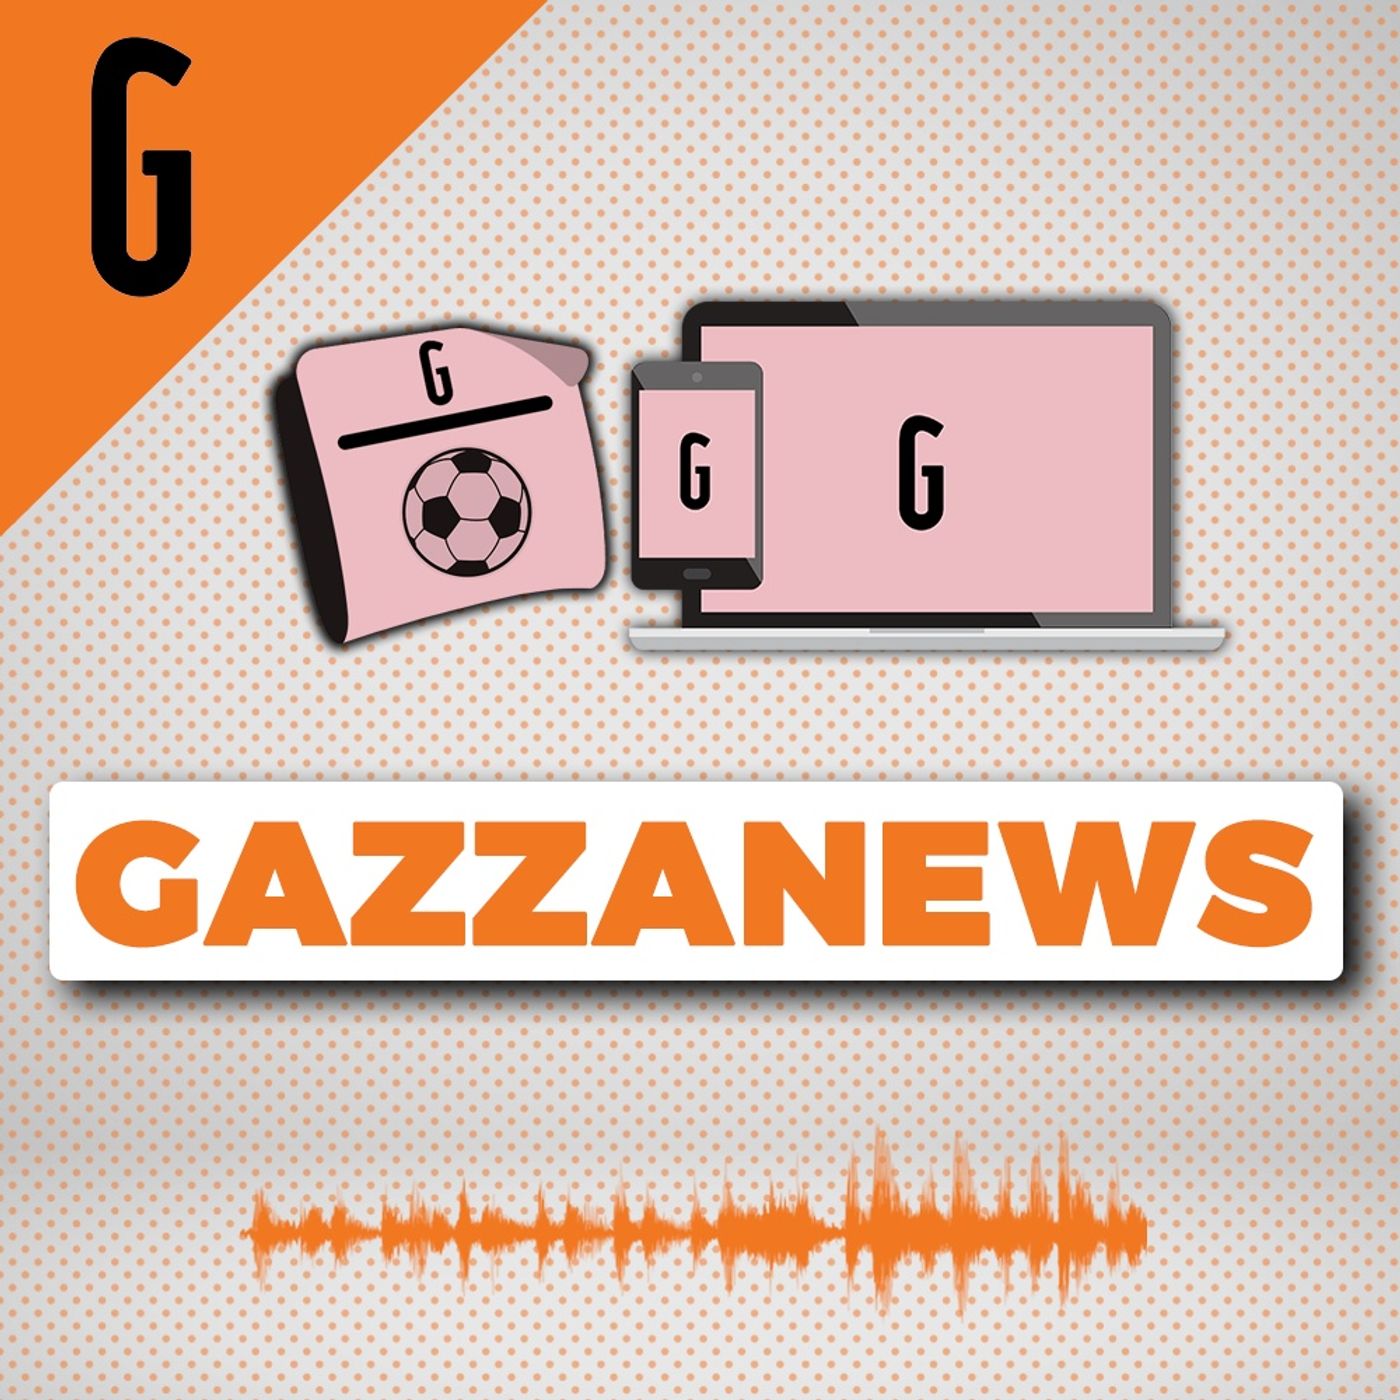 GazzaNews